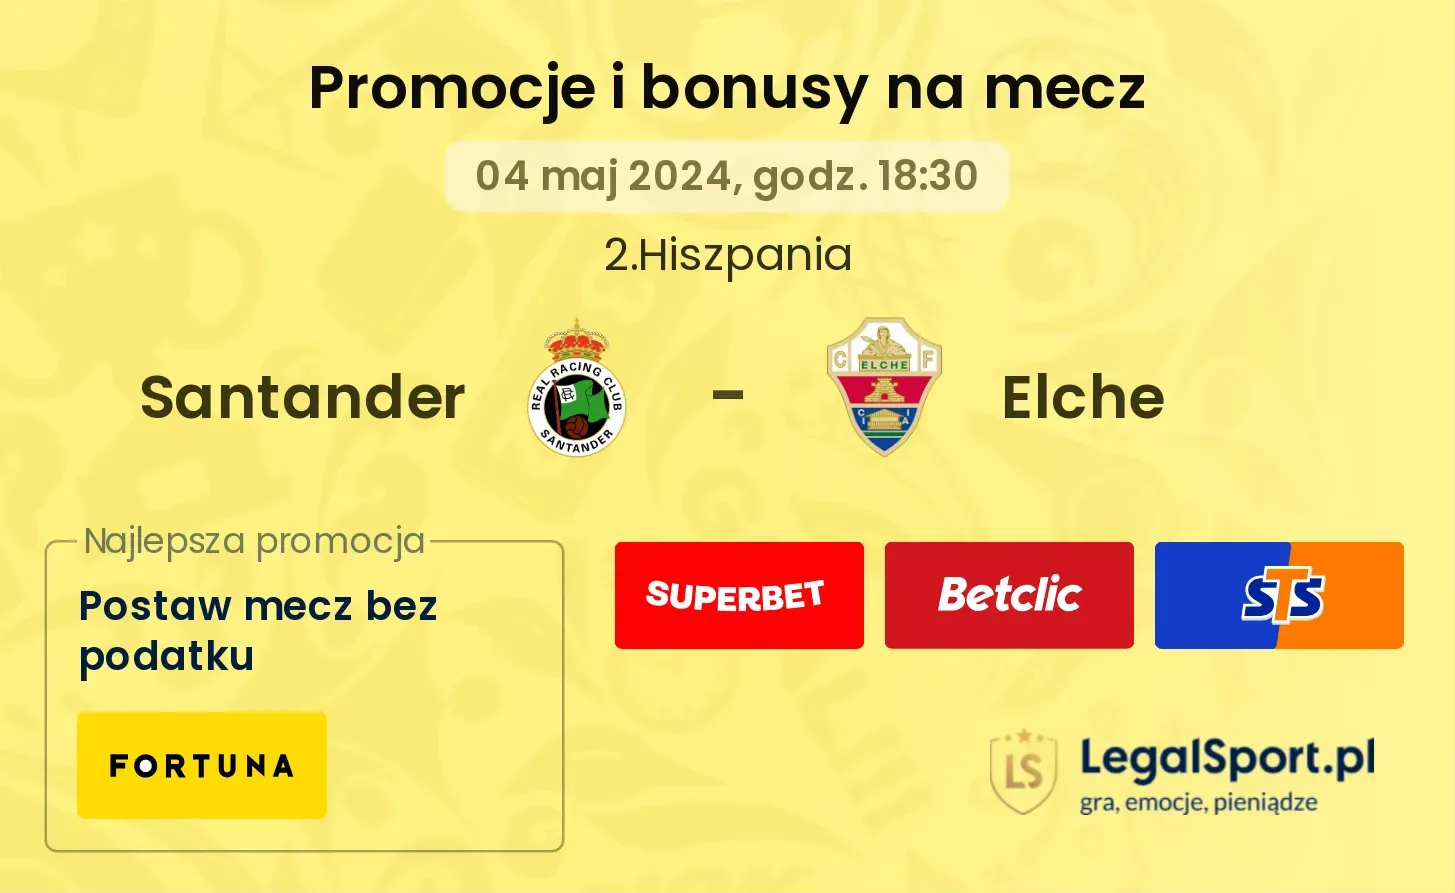 Santander - Elche promocje bonusy na mecz